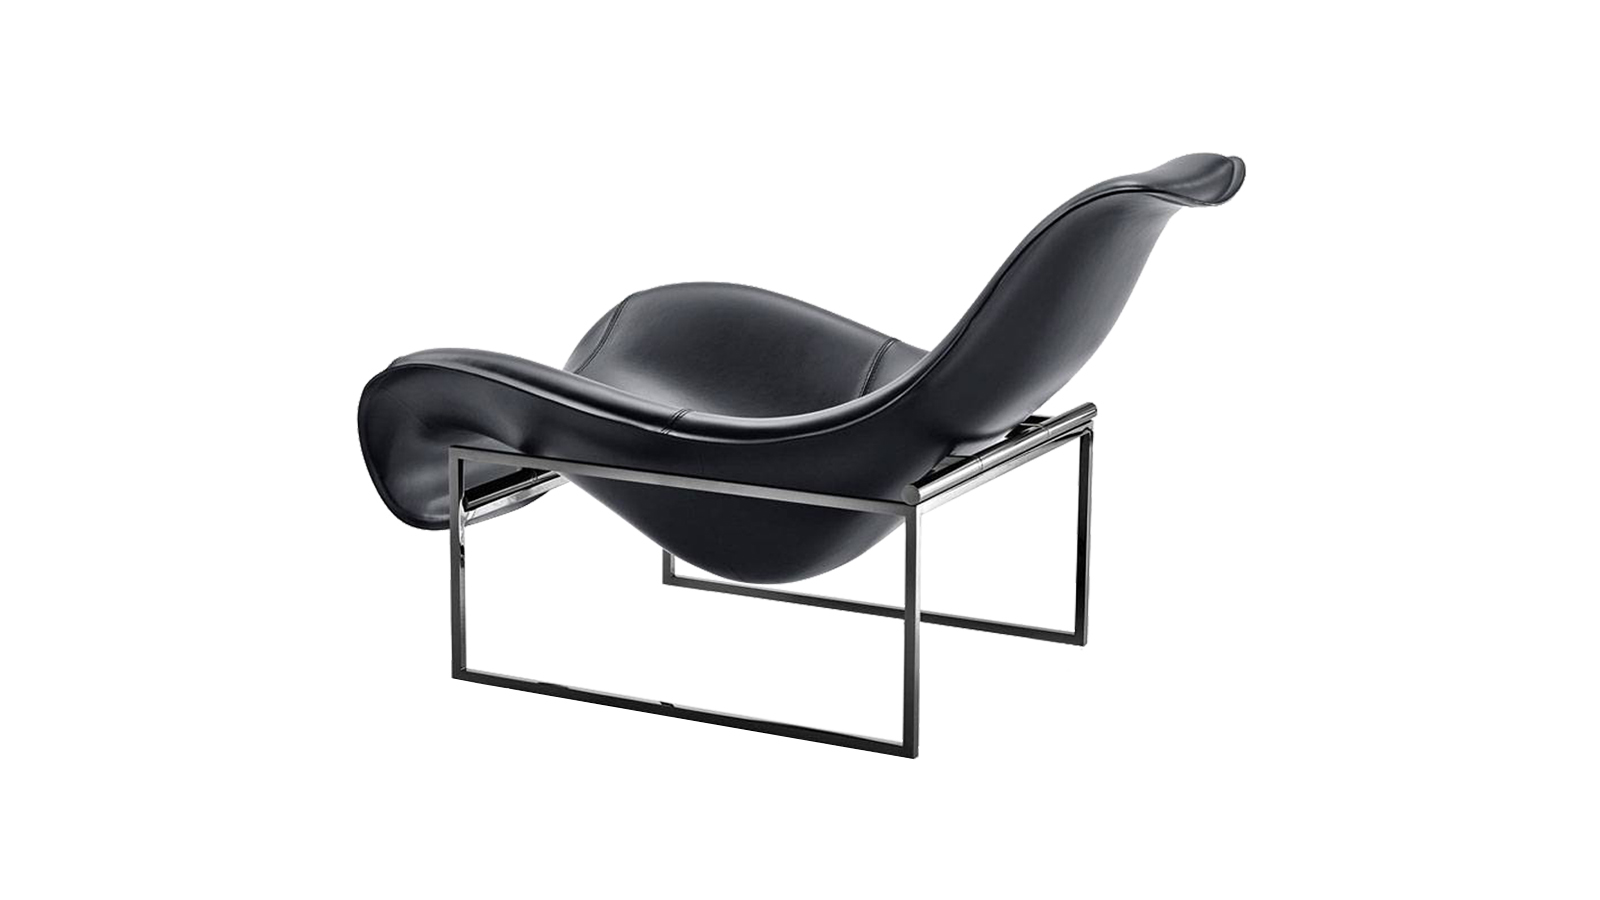 Az anyagokkal és ergonómikus kialakítással való kísérletezés eredménye a Mart székcsalád, melynek tagjai hőformázott bőrrel és krómozott tartószerkezettel készülnek. A karakteres, elegáns sziluettel rendelkező székek célja, hogy közvetítse a pihenés koncepcióját.